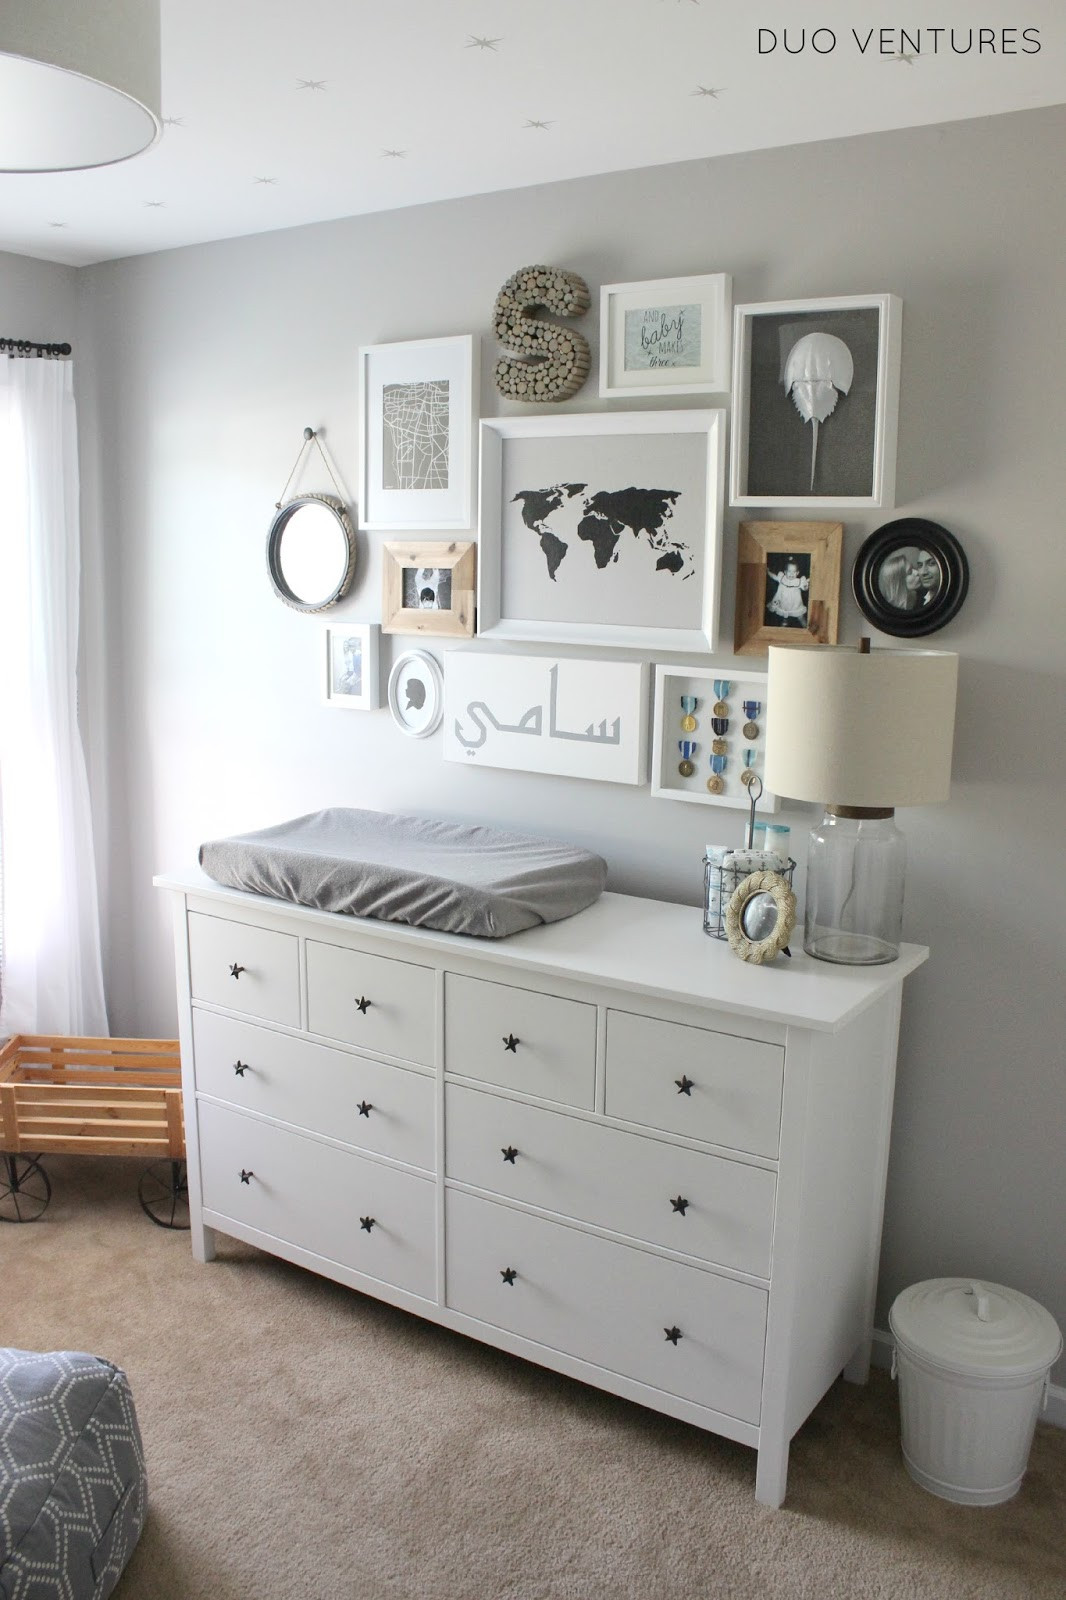 Dresser For Baby Room
 Duo Ventures The Nursery Custom IKEA Hemnes Dresser